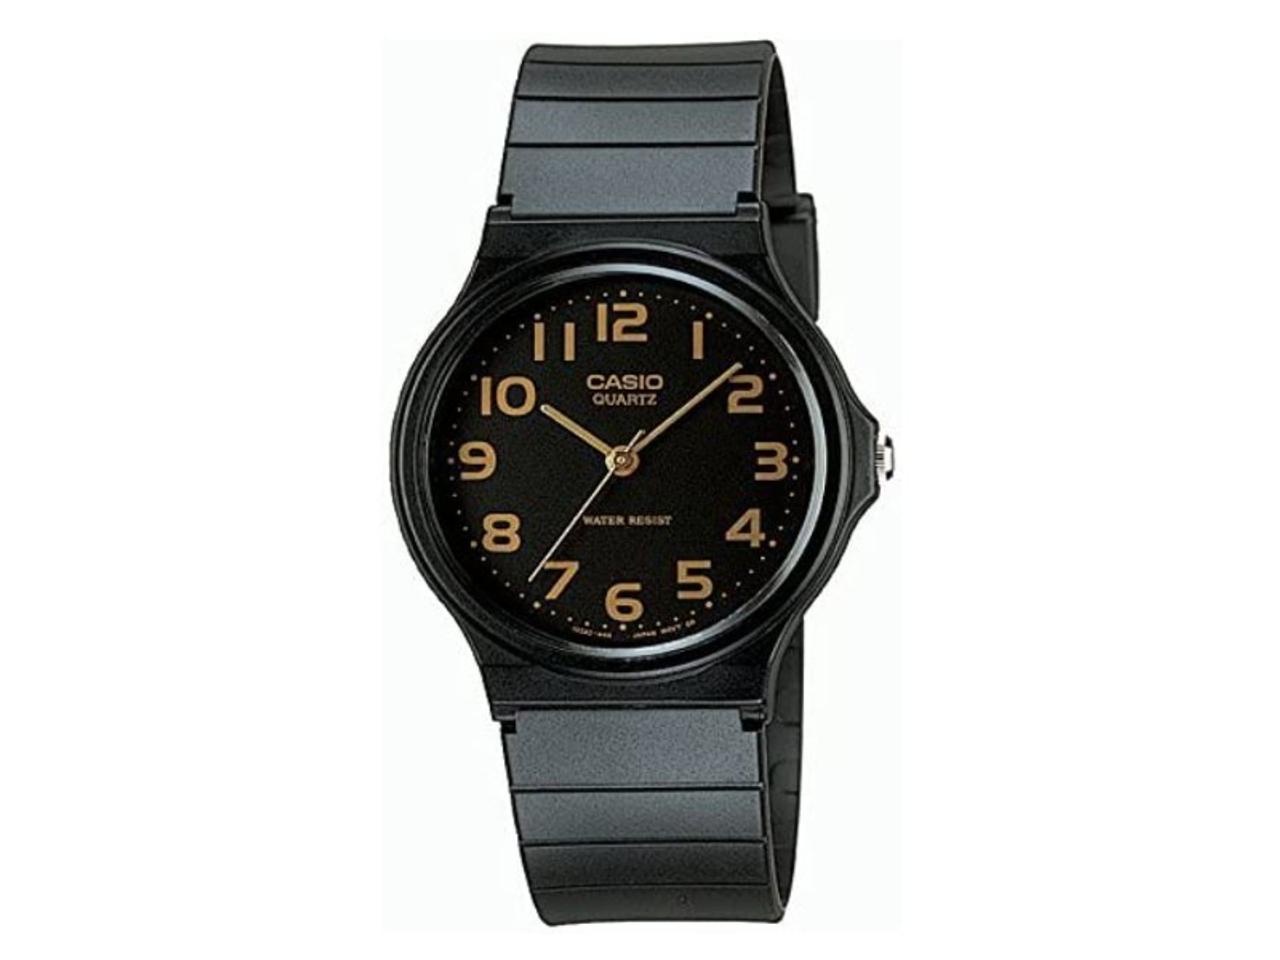 【Amazon夏先取りSALE】本日スタートの夏先取りSALEで、1,000円台のカシオのシンプルで視認性抜群の腕時計やApple Watch用の硬度9H保護カバーがお買い得に！